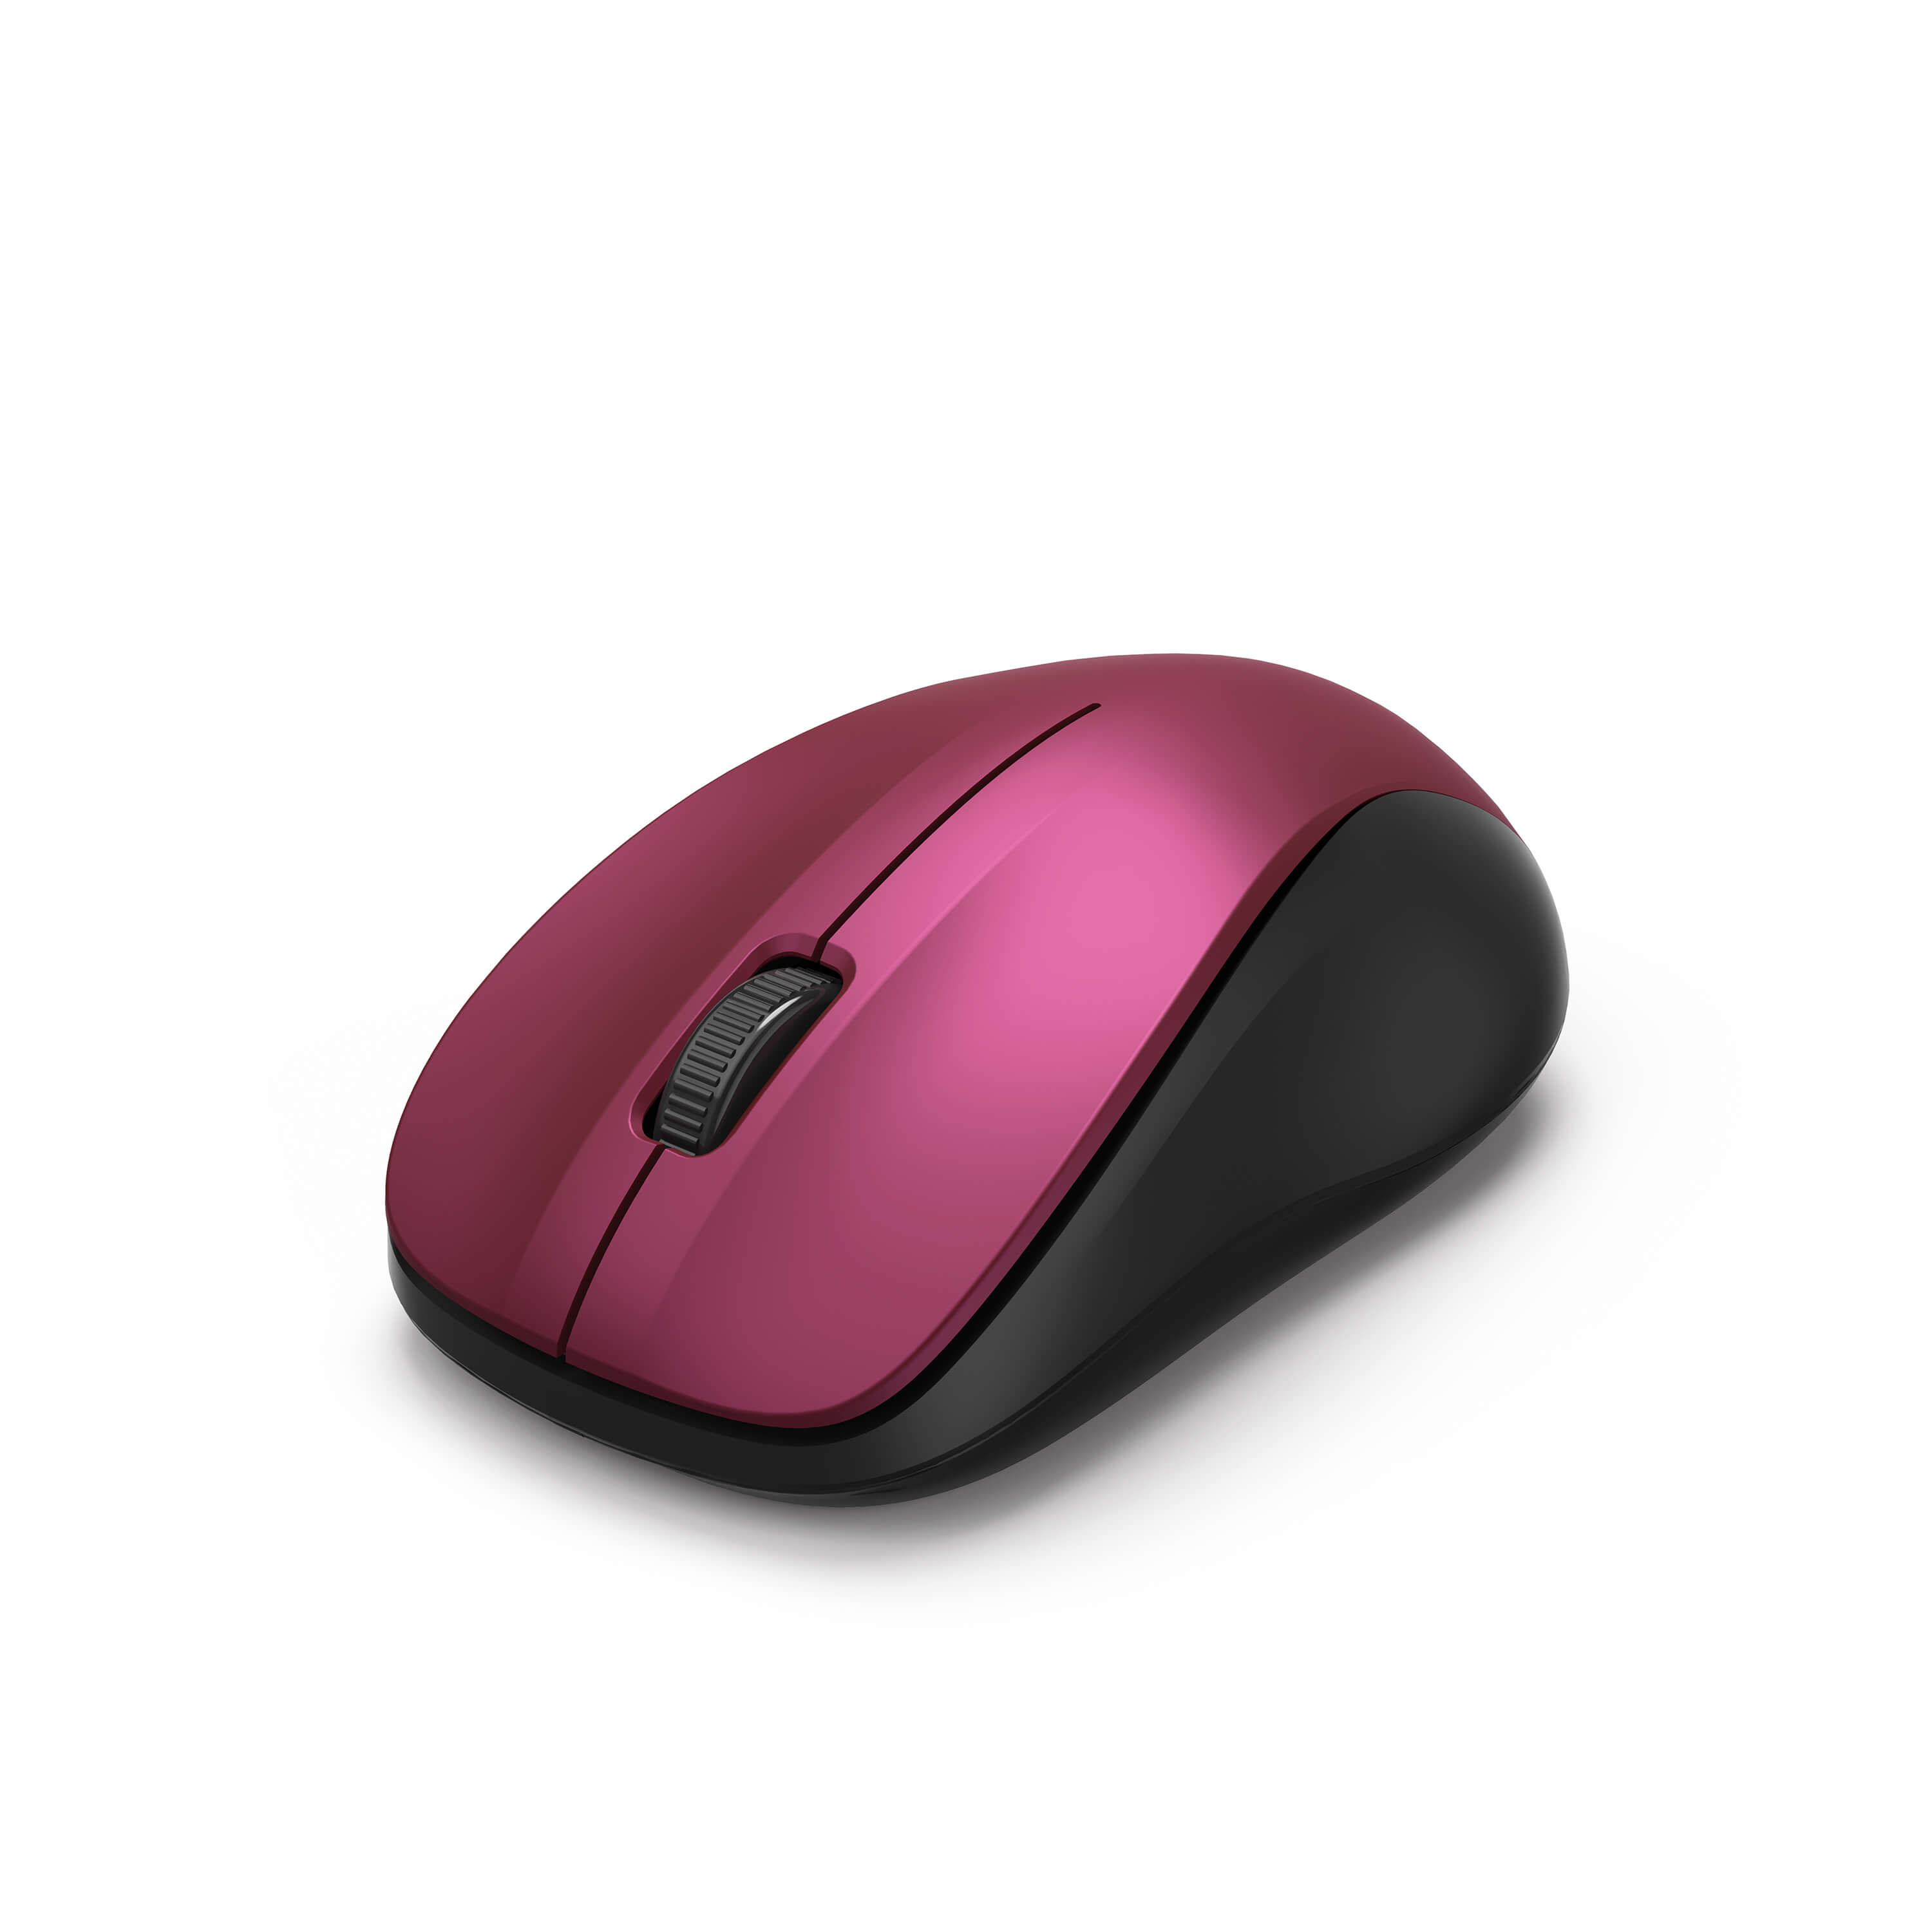 HAMA 3-Button Mouse, MW-300 Bordeaux-Pink